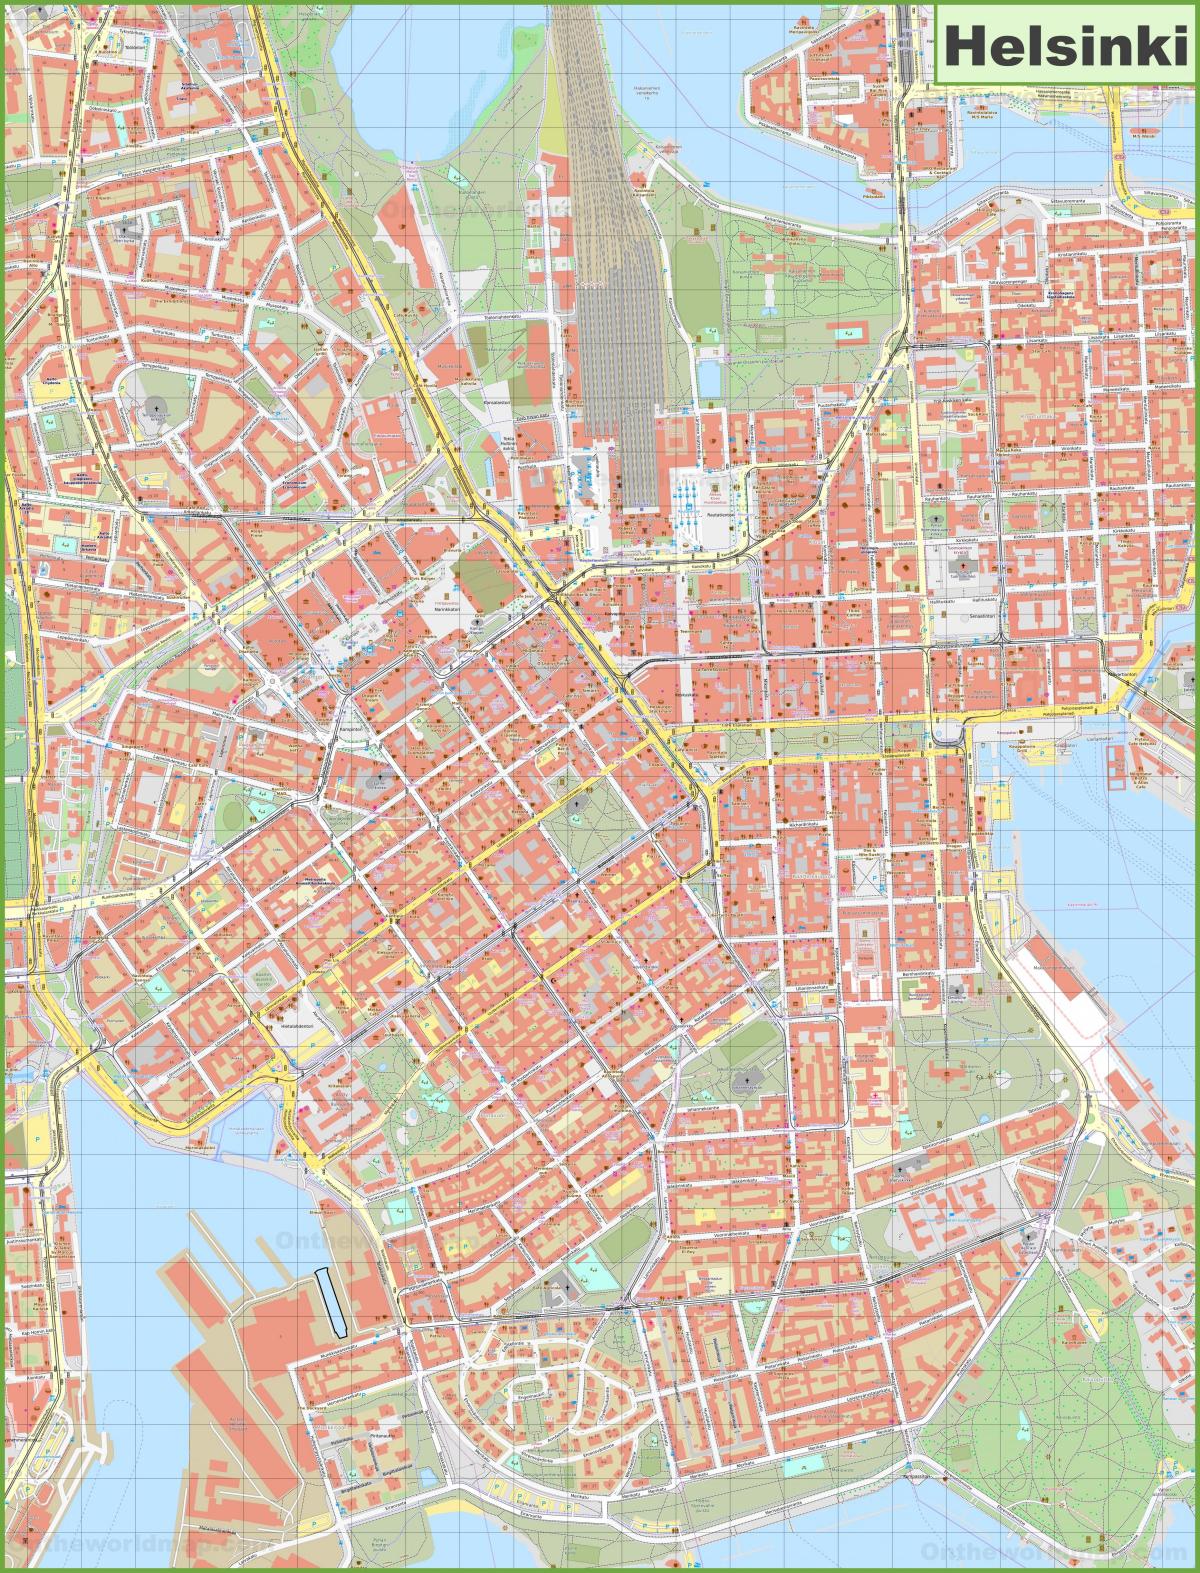 خريطة شوارع هلسنكي